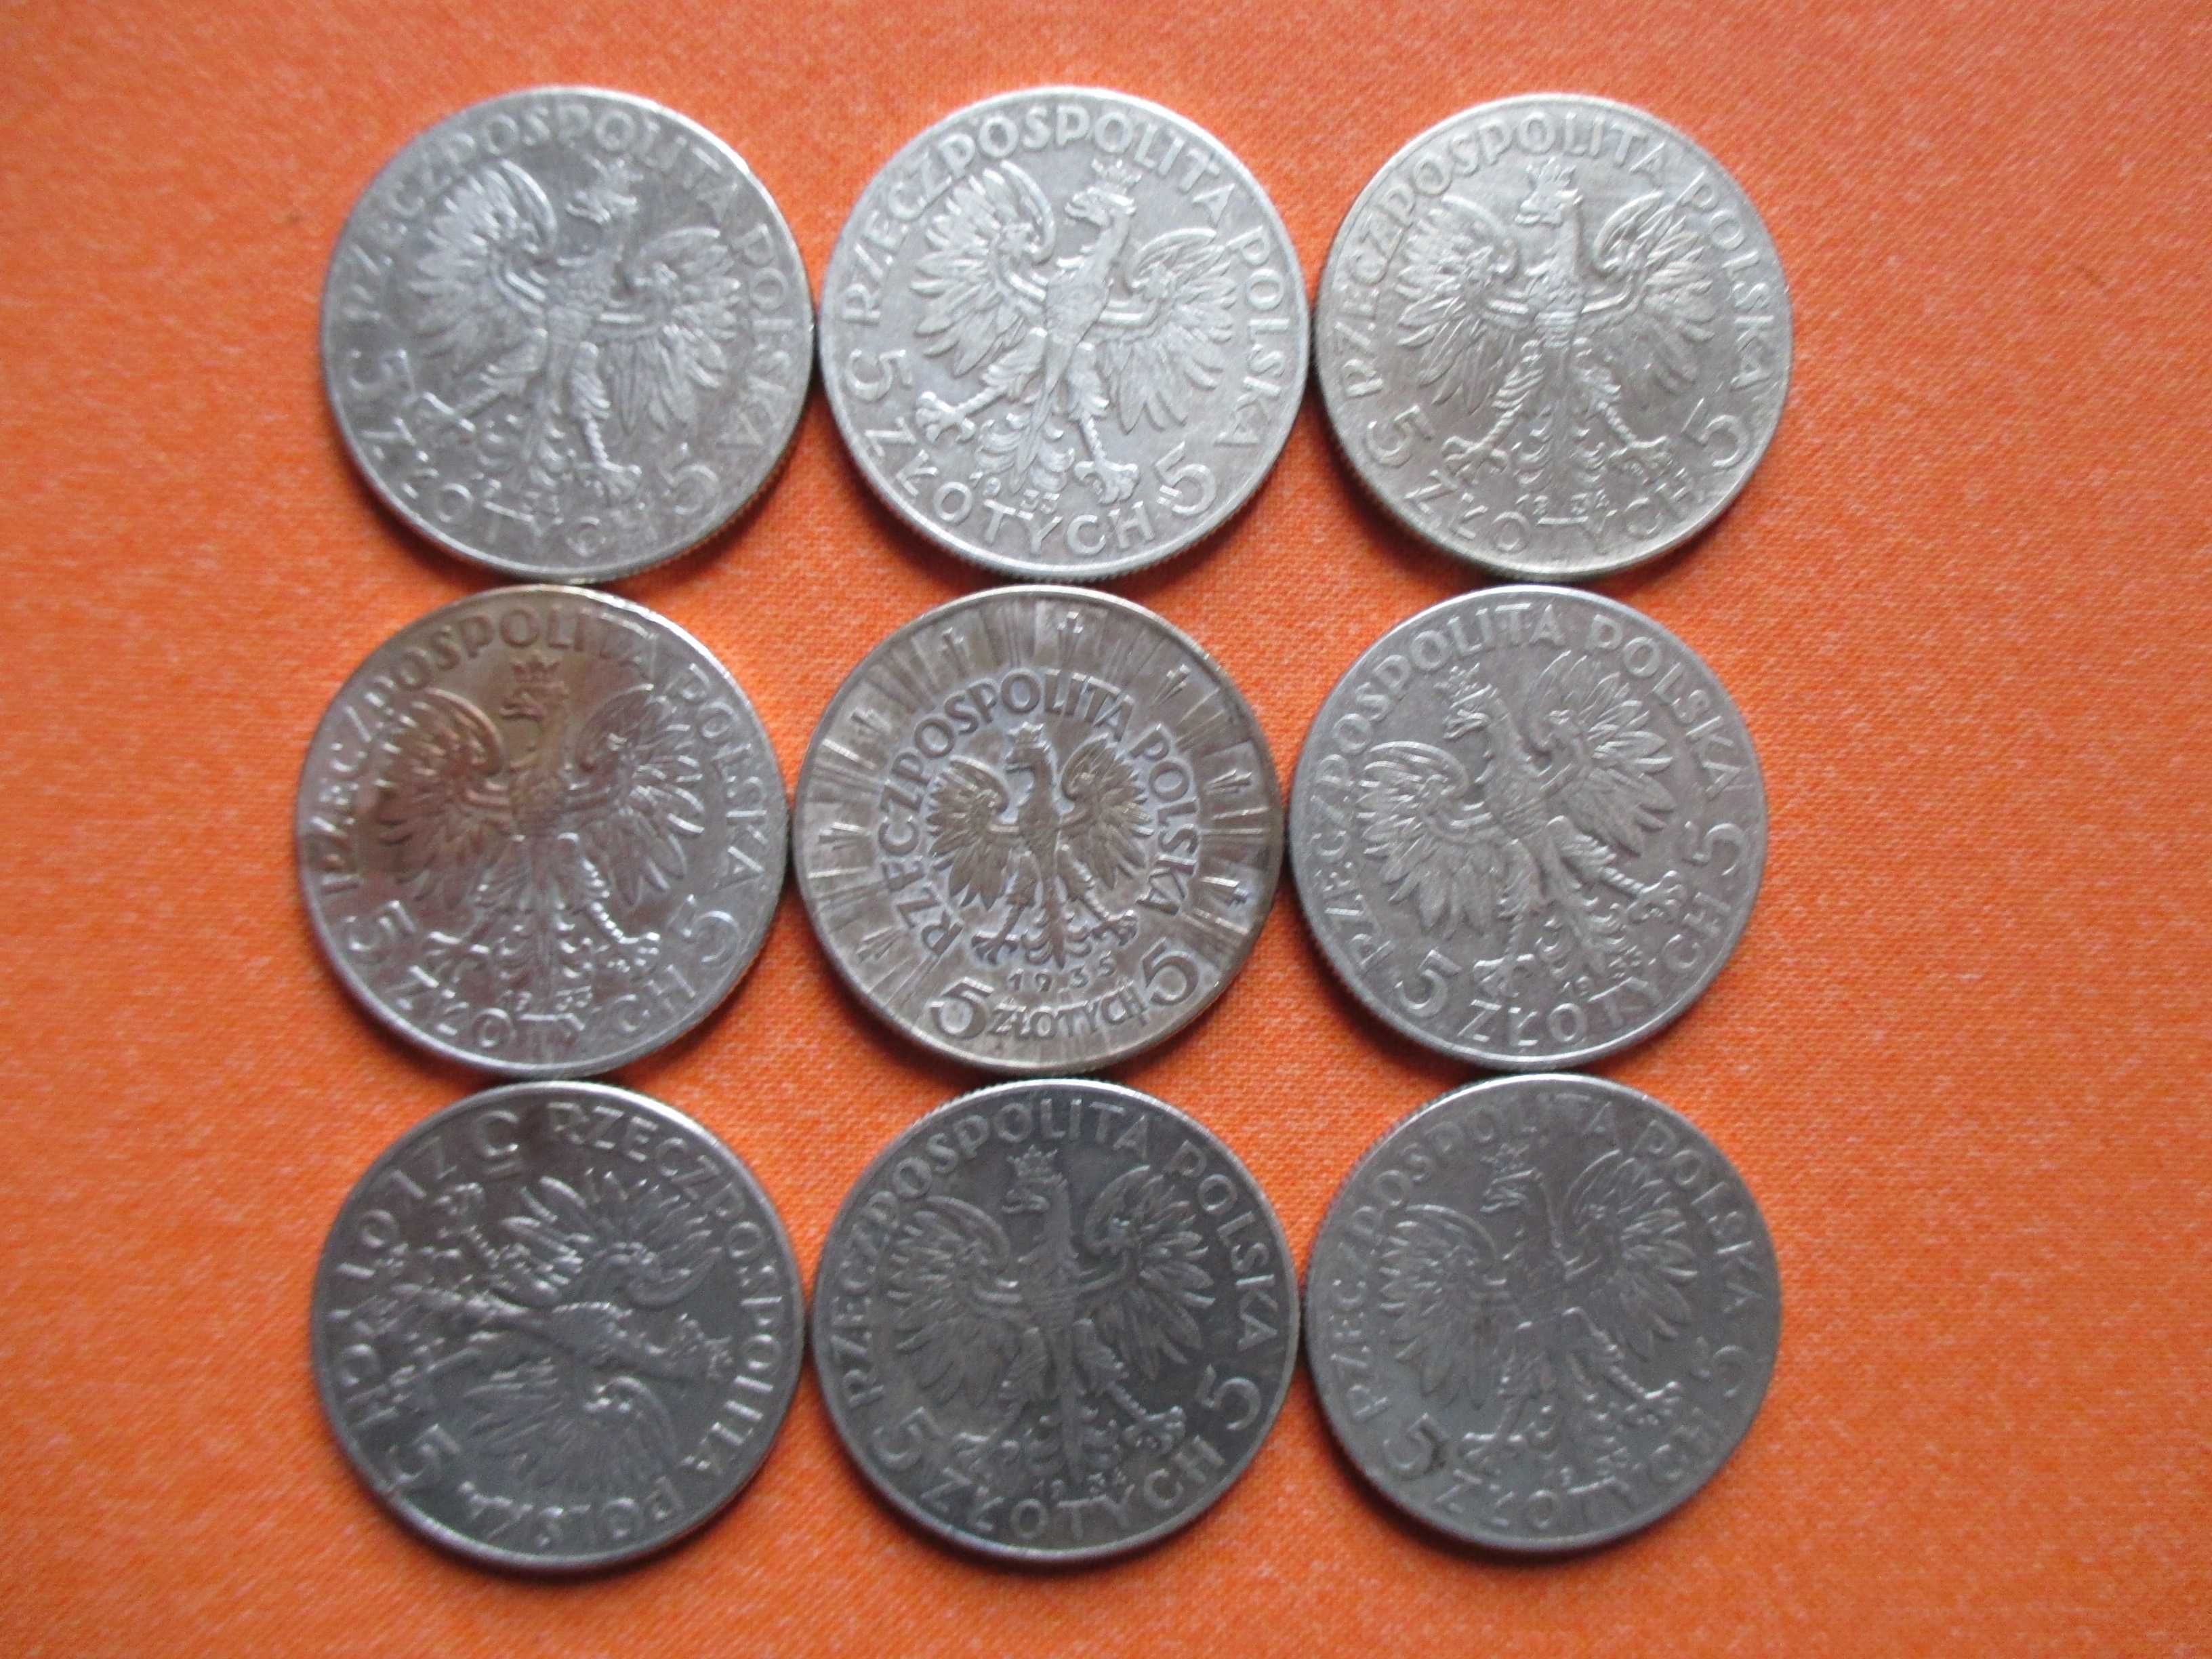 Zestaw srebrnych monet 5 zł z 1932,33,34 i 35 r. 9 szt. Oryginały !!!